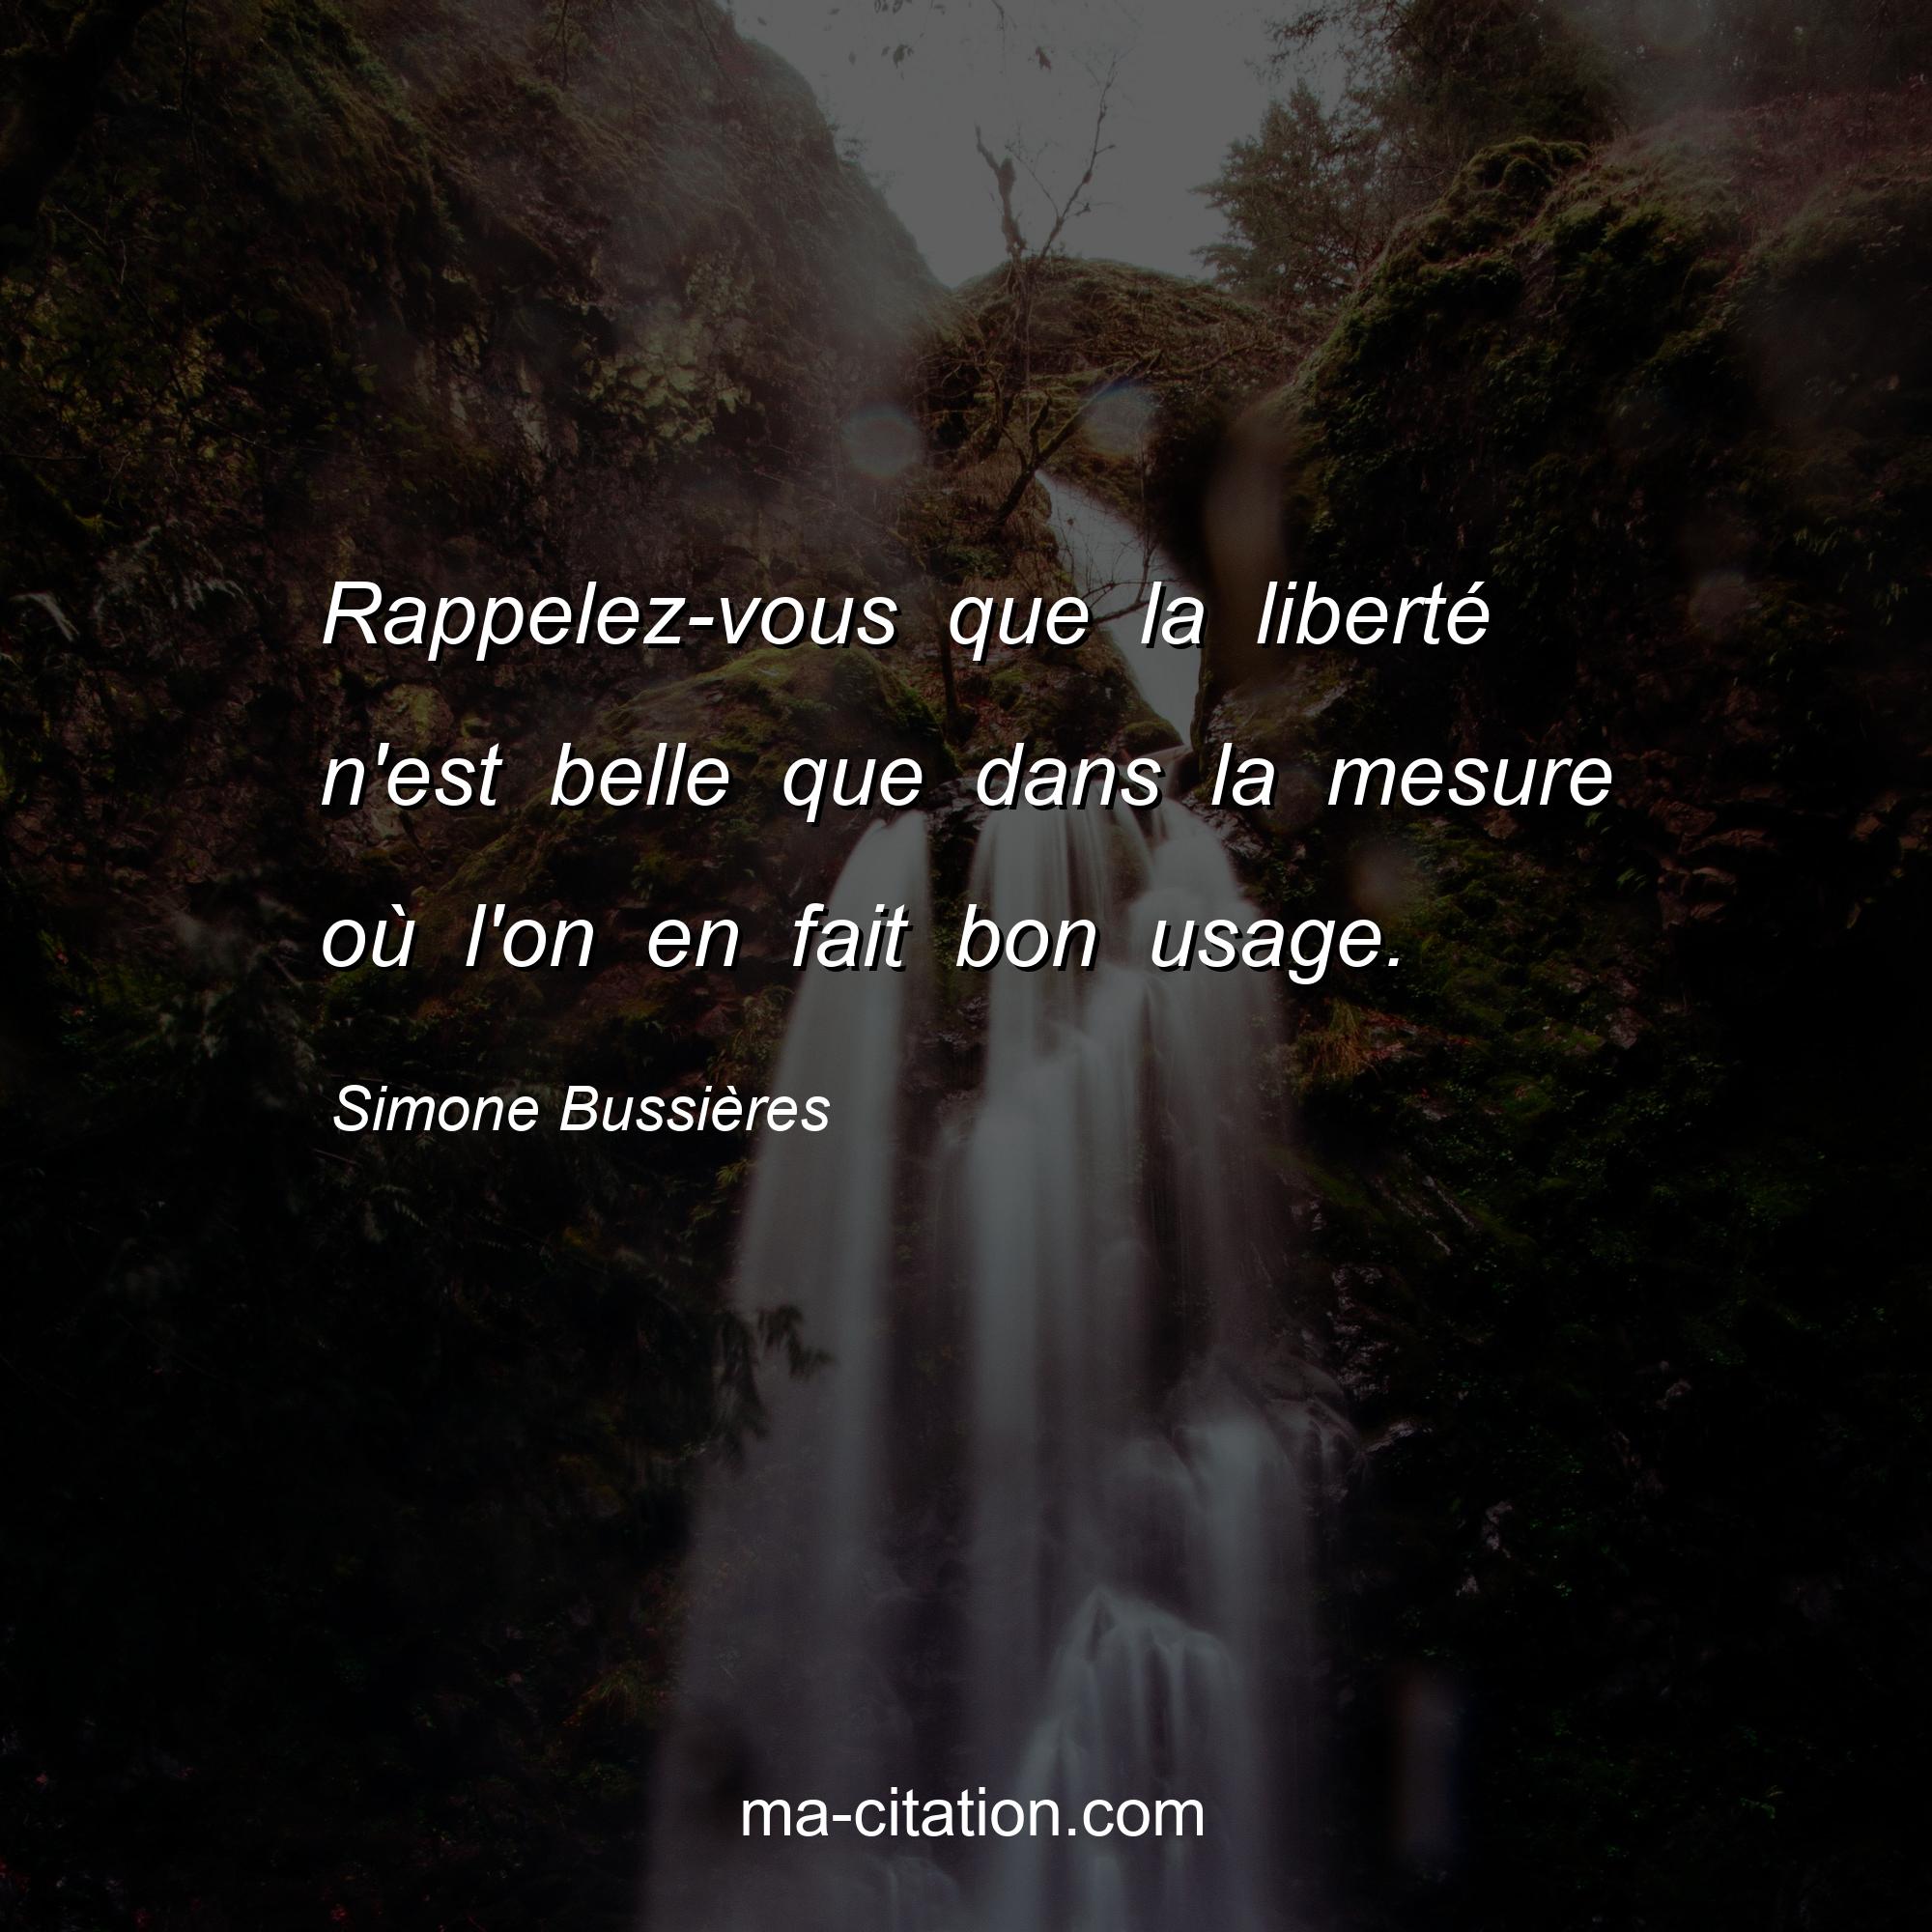 Simone Bussières : Rappelez-vous que la liberté n'est belle que dans la mesure où l'on en fait bon usage.